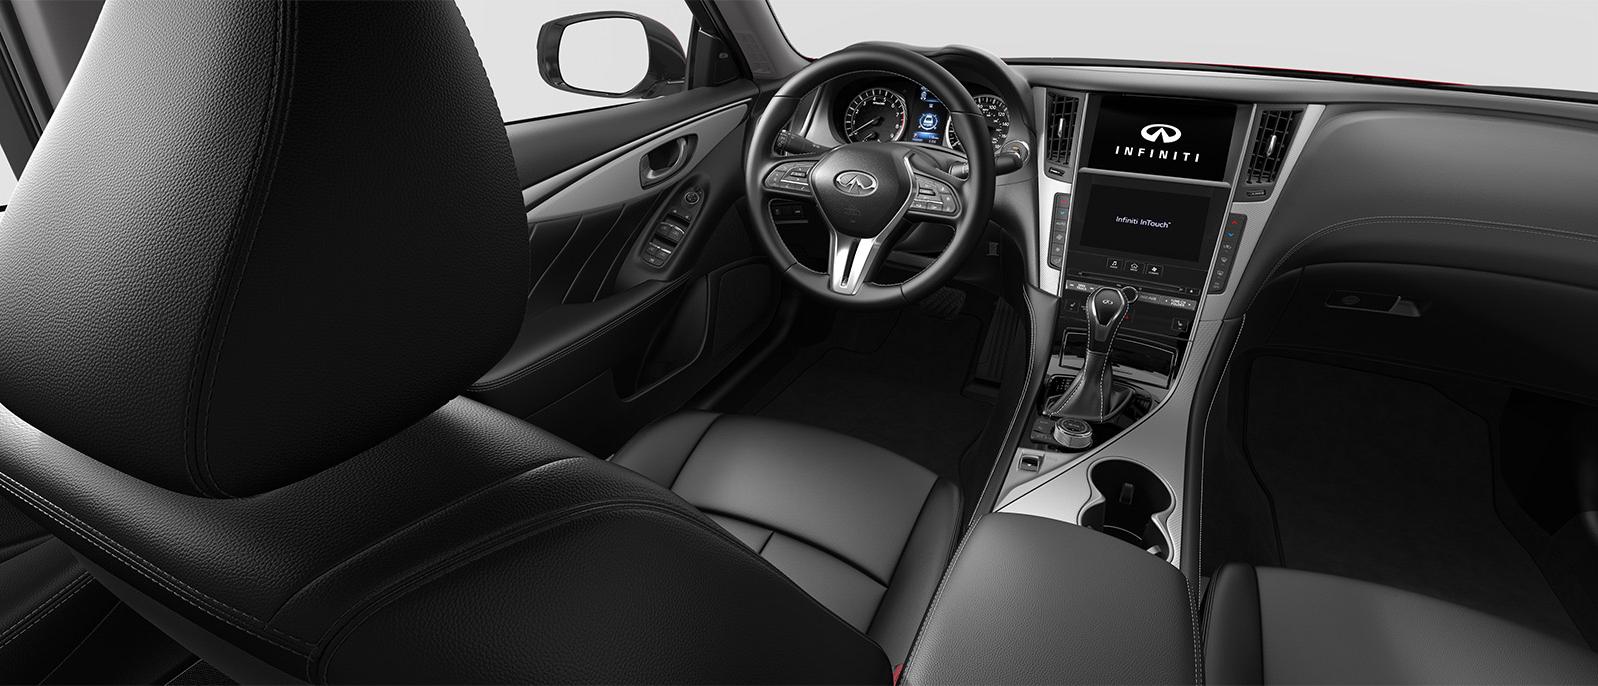 INFINITI Q50 Luxe trim interior in Graphite color scheme.